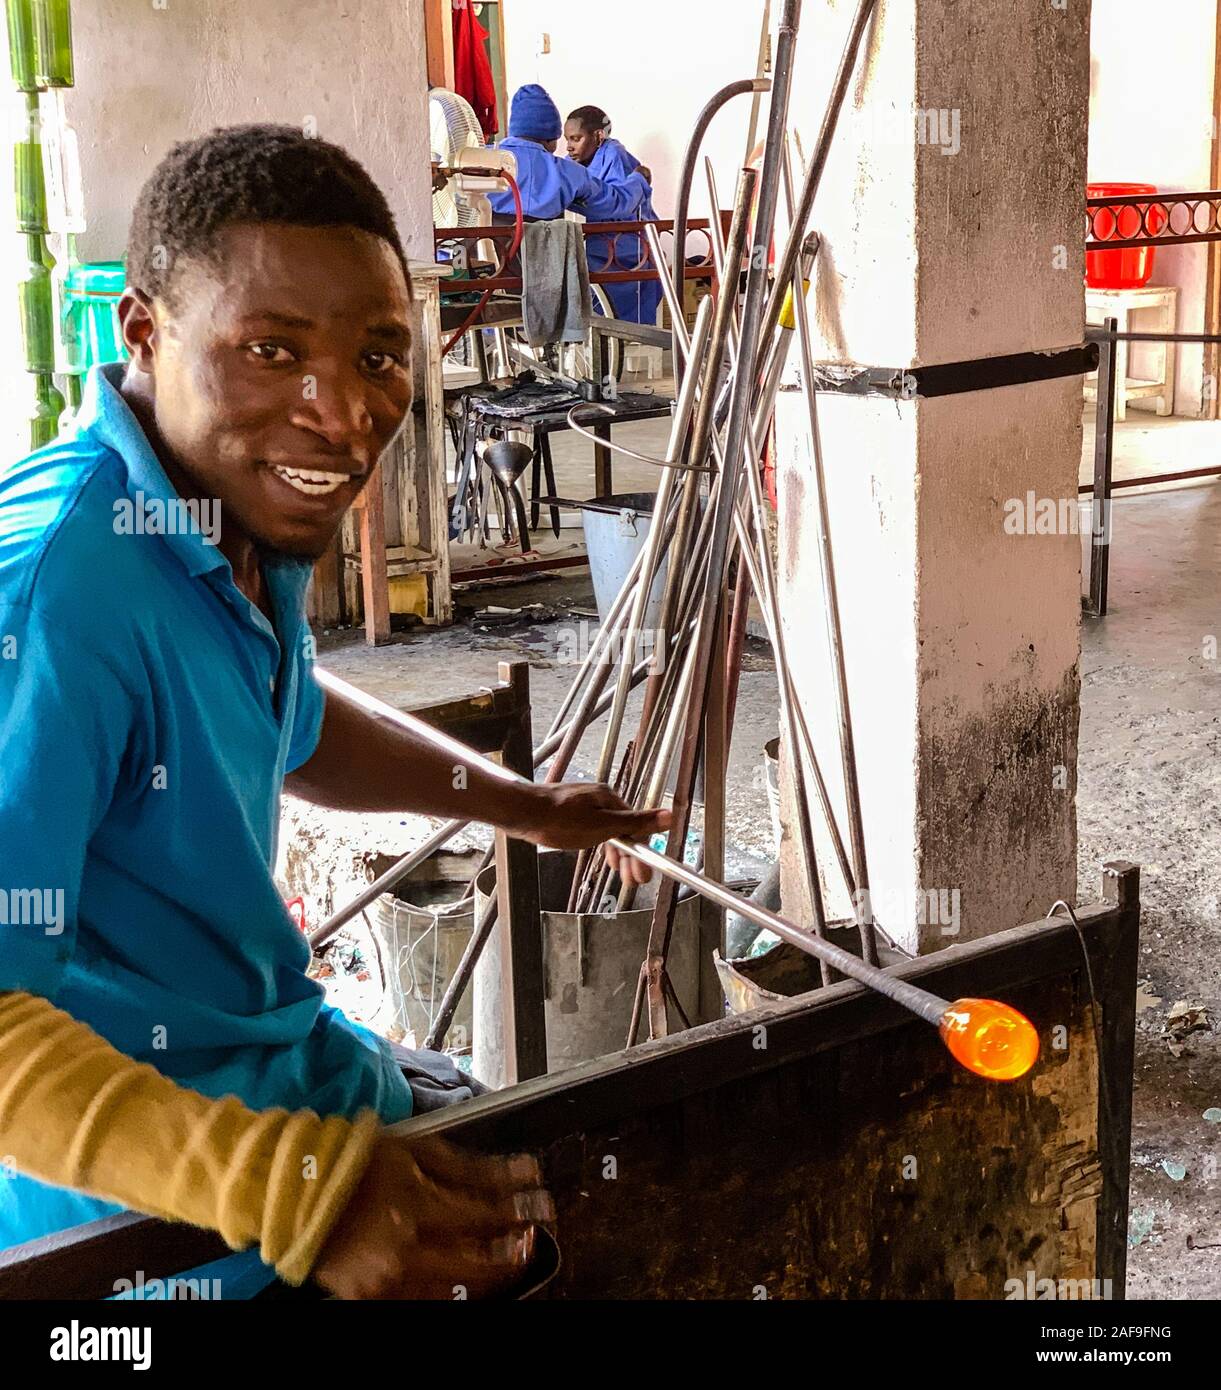 Tansania. Arusha. Behinderte Arbeitnehmer Gestaltung geschmolzenes Glas für Glas in Shanga, einem Zentrum für Kunsthandwerk Beschäftigung von Behinderten. Stockfoto